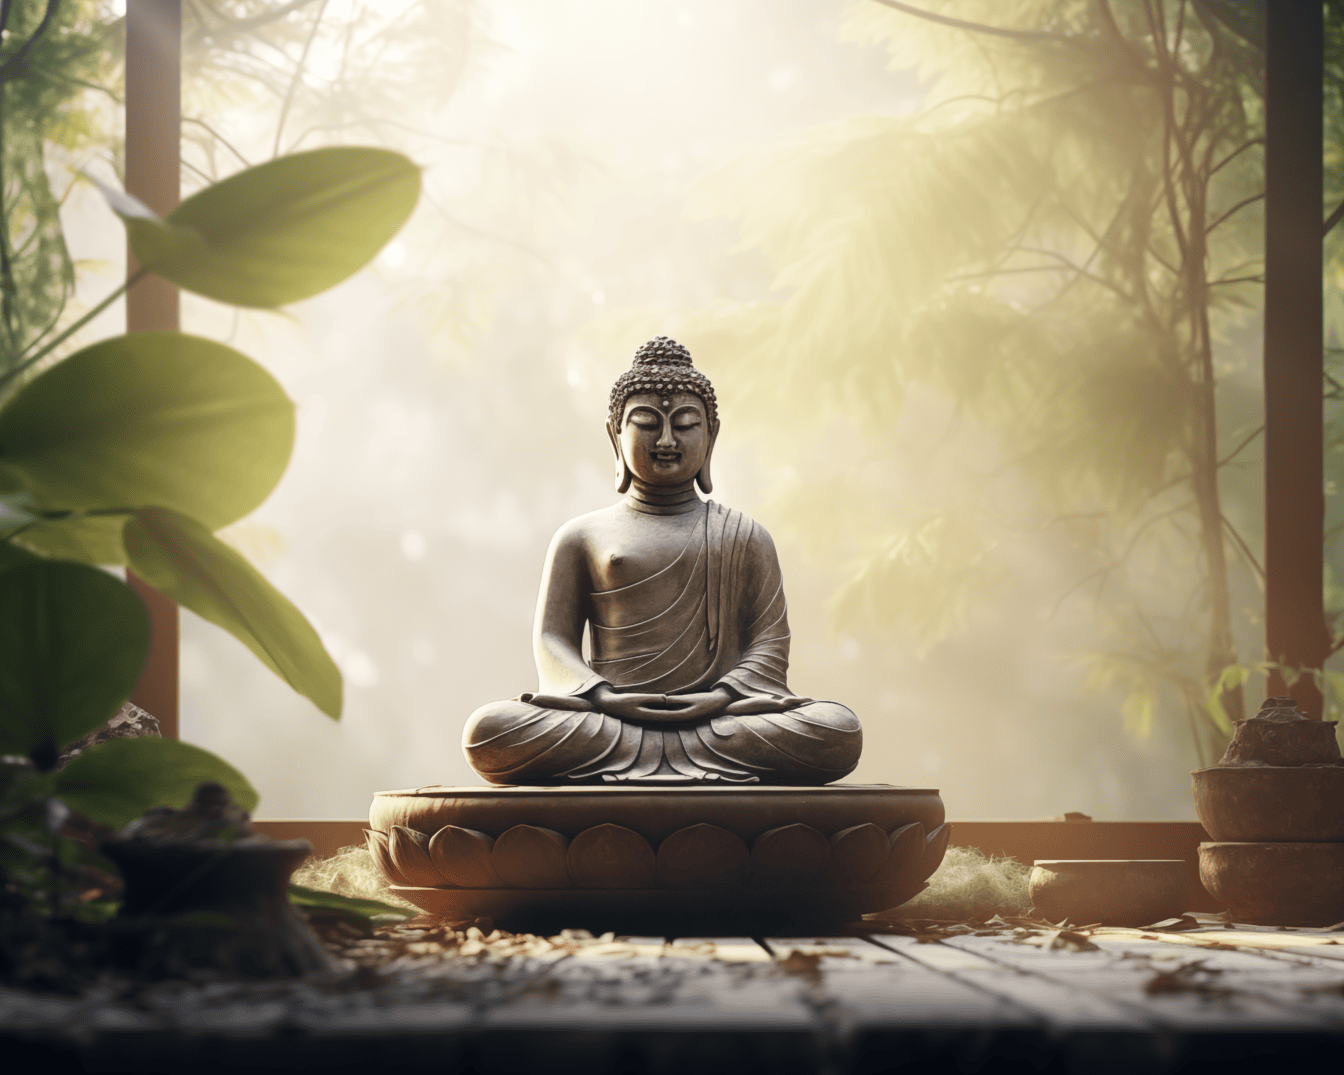 Patung Buddha duduk dalam posisi lotus berlatih meditasi Zen di teras dengan sinar lembut matahari di latar belakang